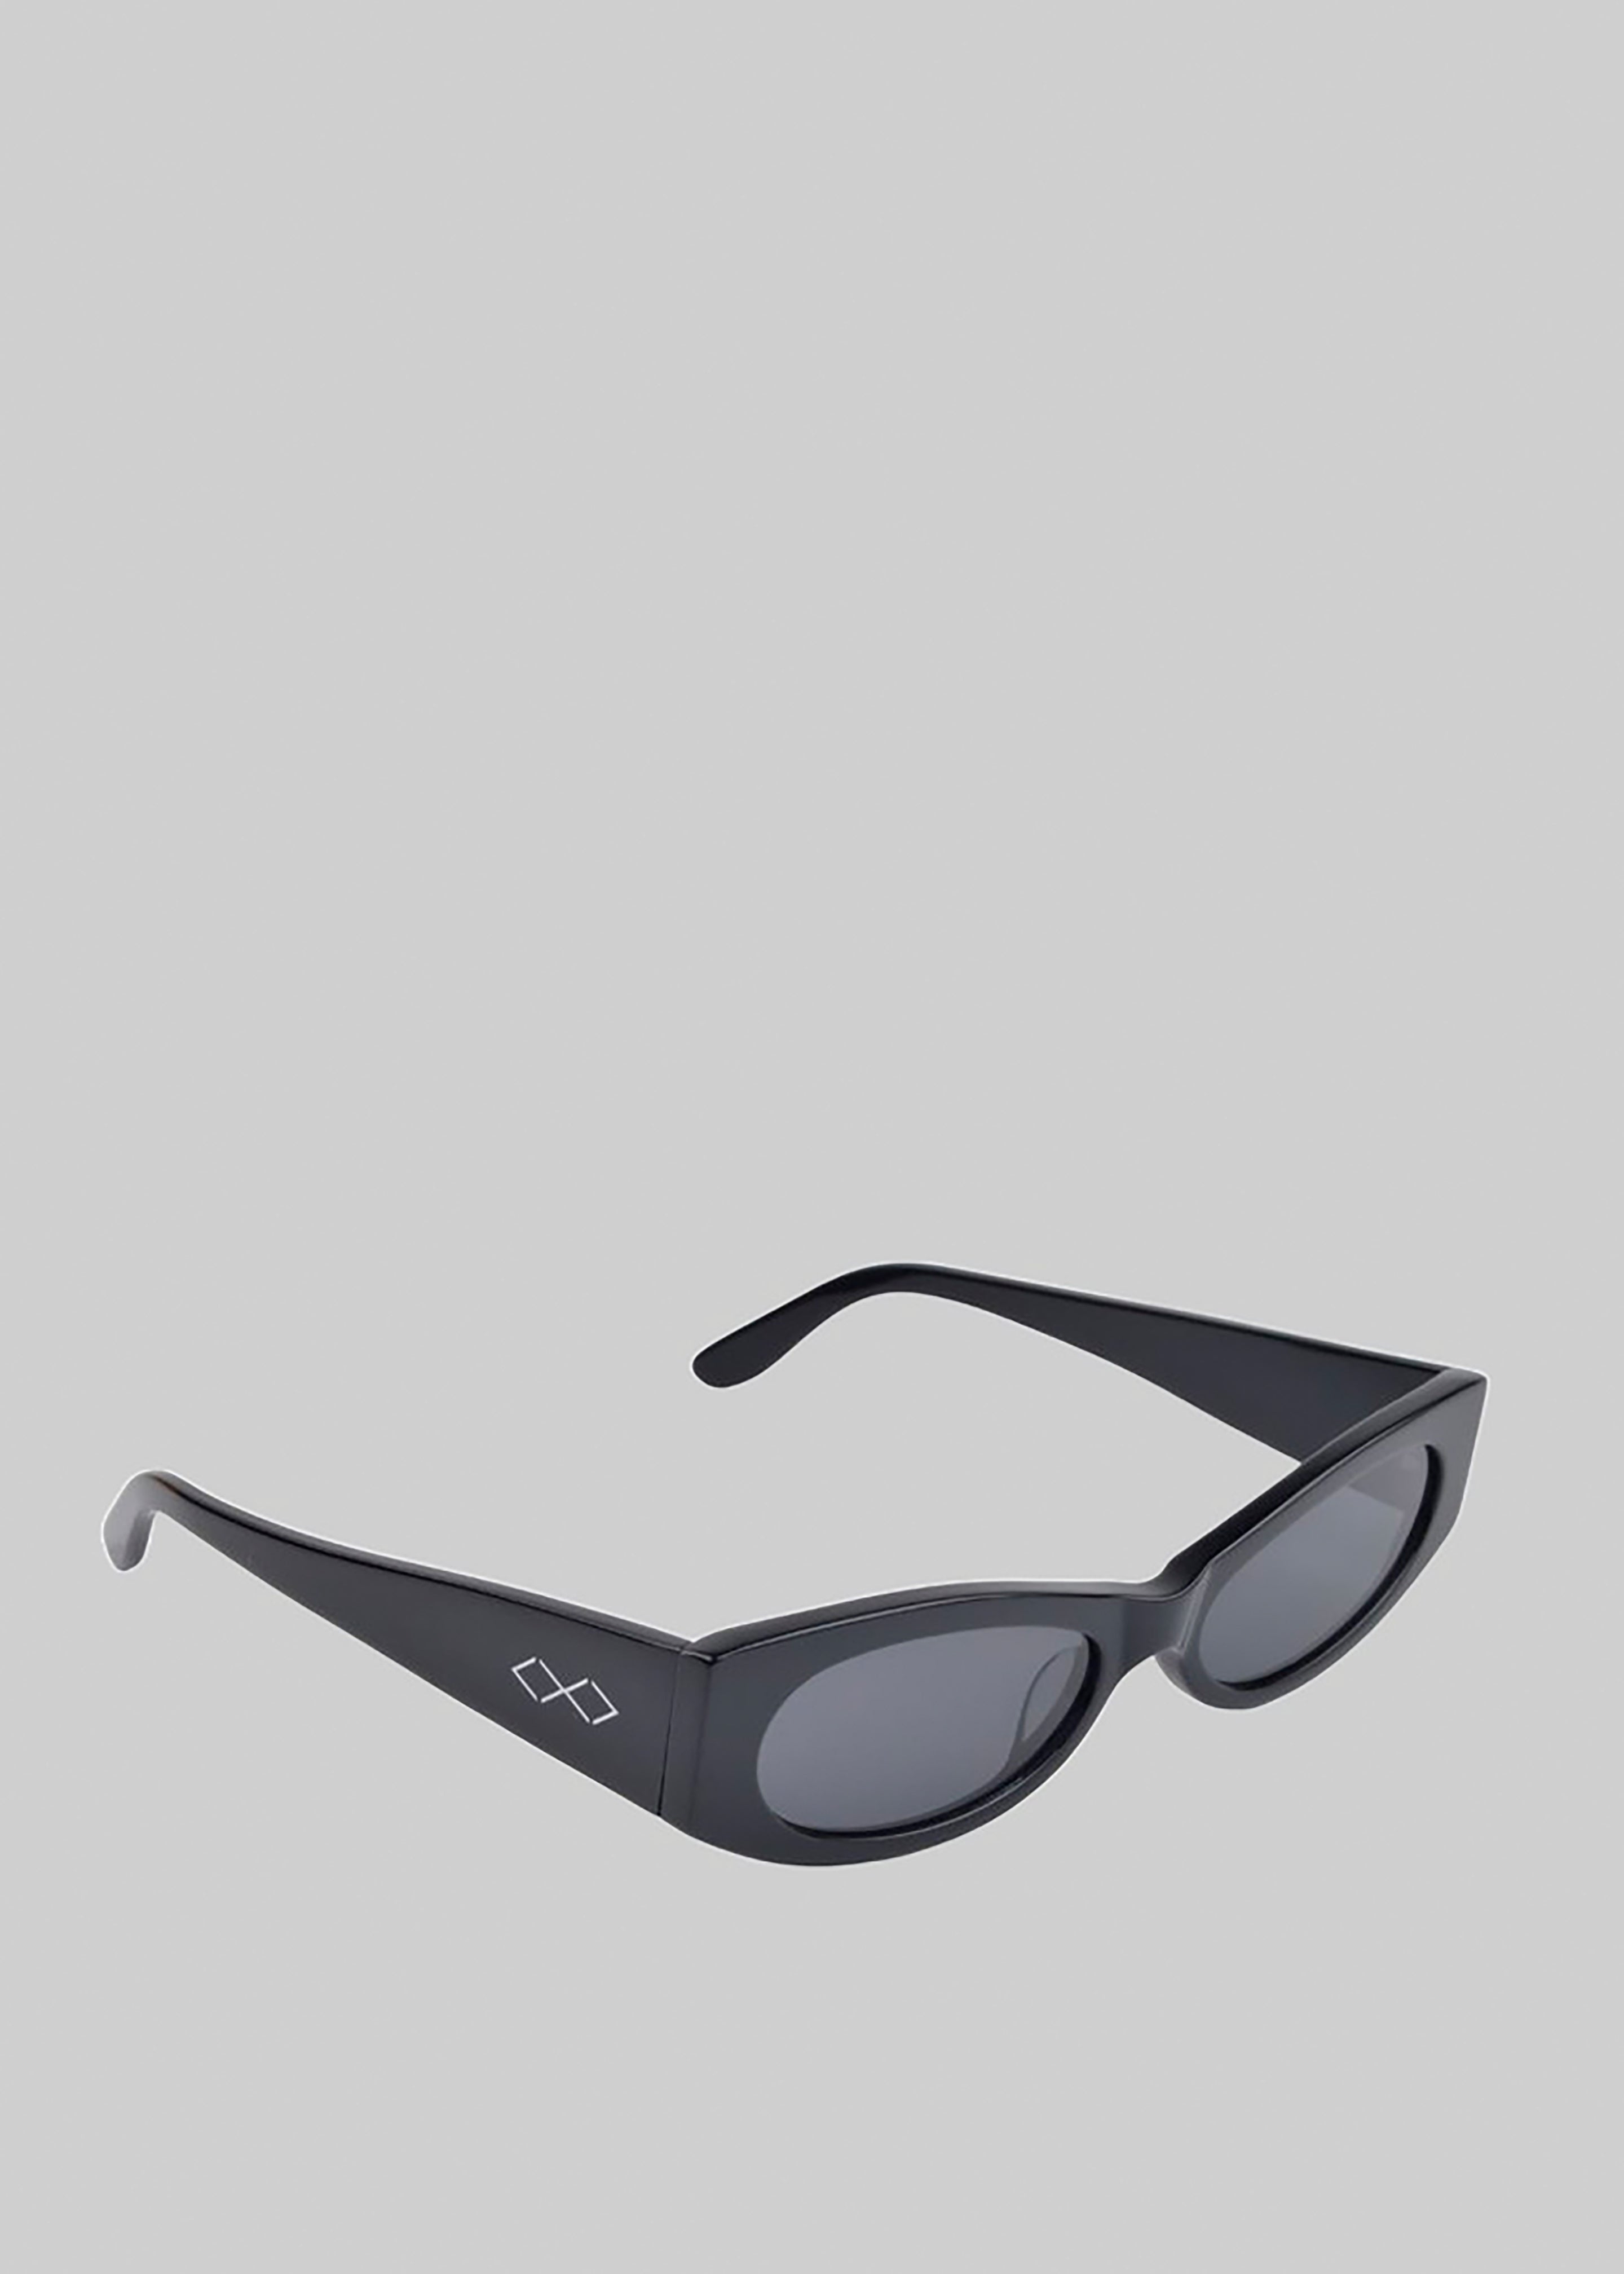 Karen Wazen Ciara Sunglasses - Black - 1